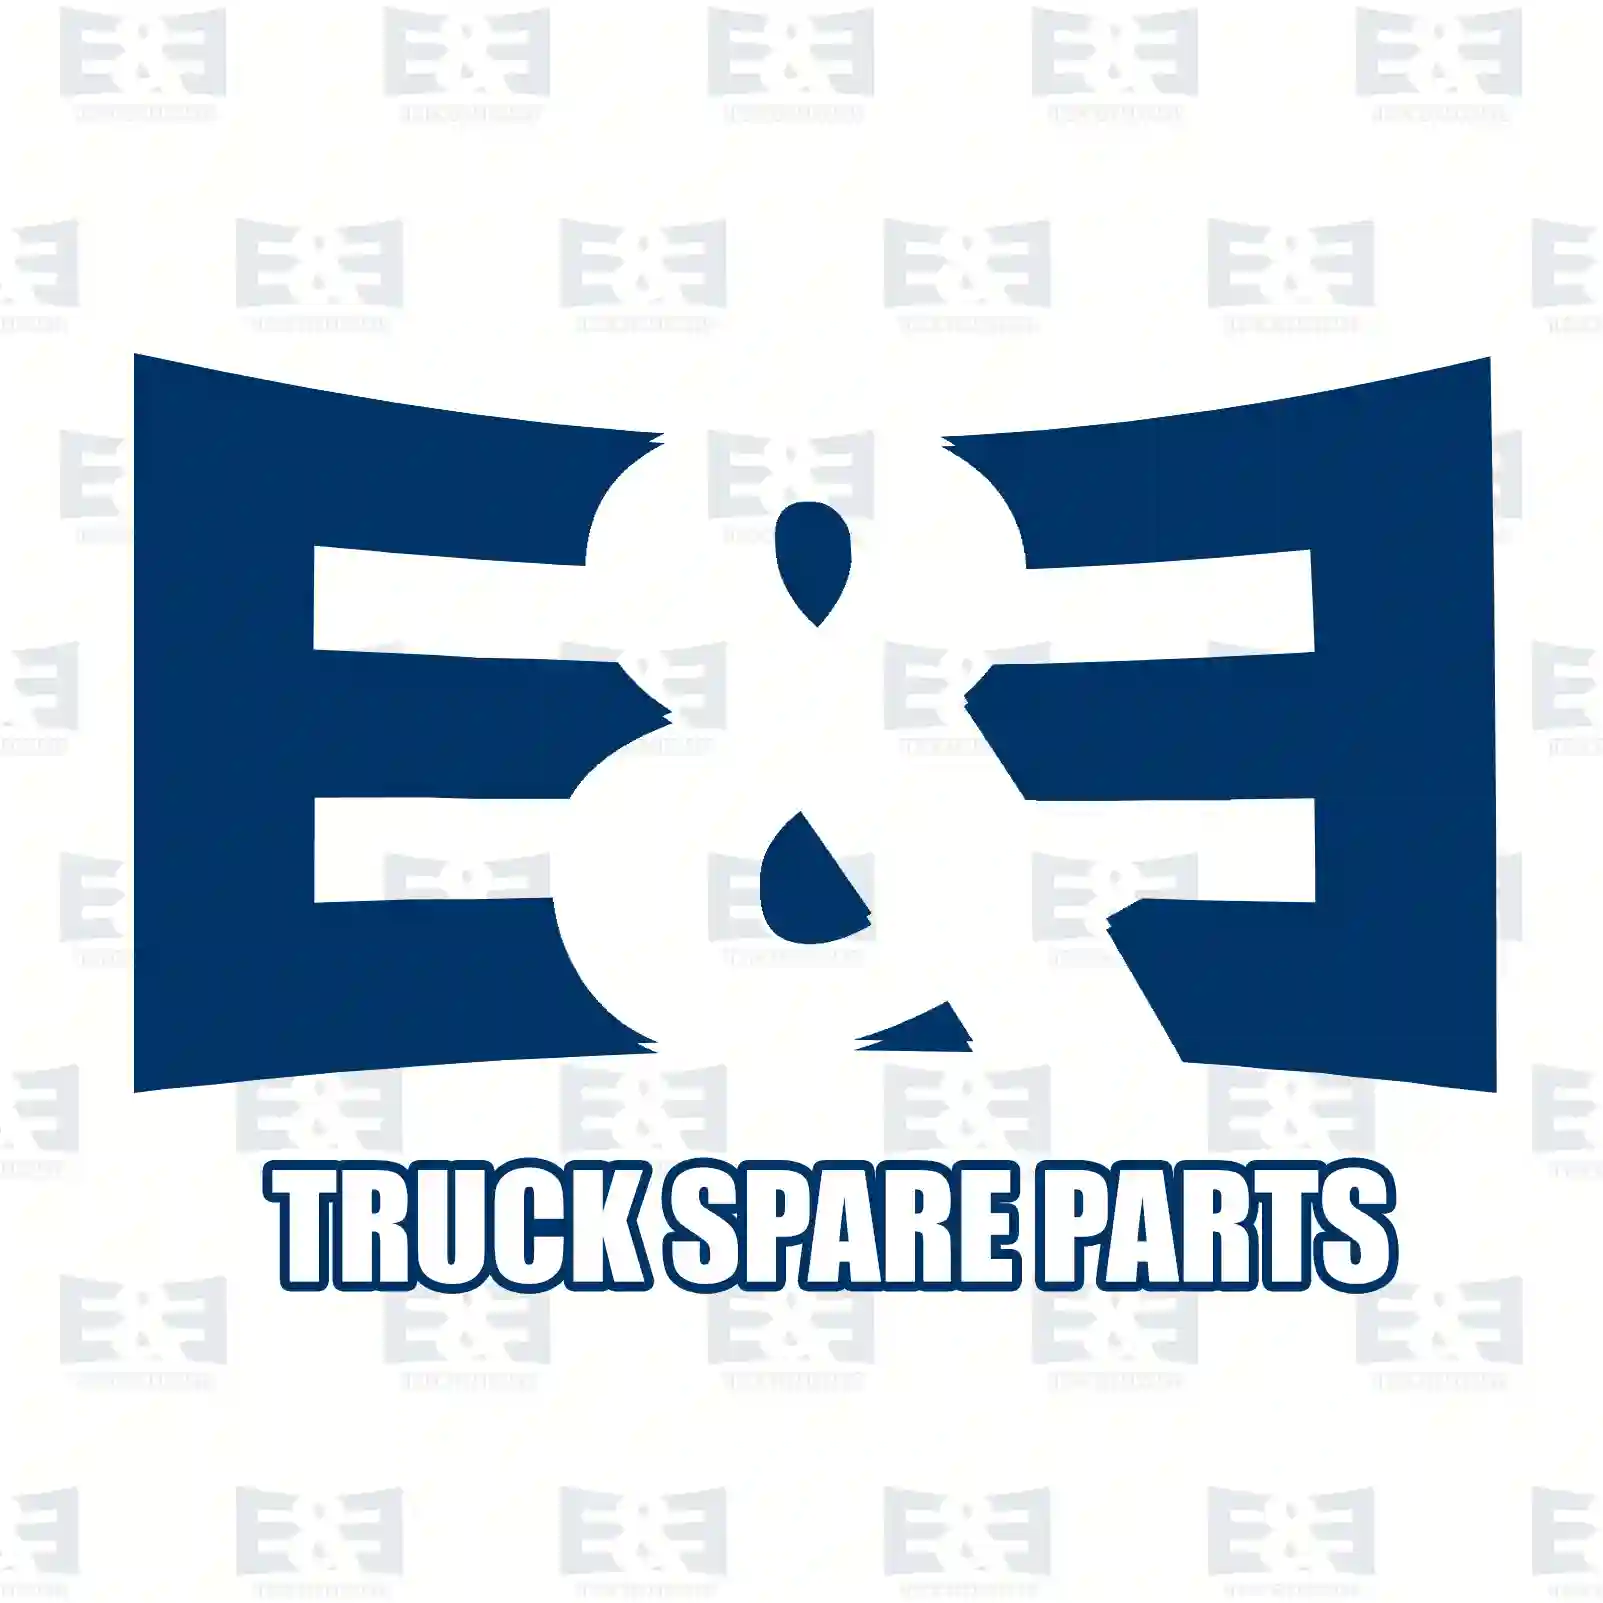 Clutch kit, 2E2288991, 81300059016 ||  2E2288991 E&E Truck Spare Parts | Truck Spare Parts, Auotomotive Spare Parts Clutch kit, 2E2288991, 81300059016 ||  2E2288991 E&E Truck Spare Parts | Truck Spare Parts, Auotomotive Spare Parts